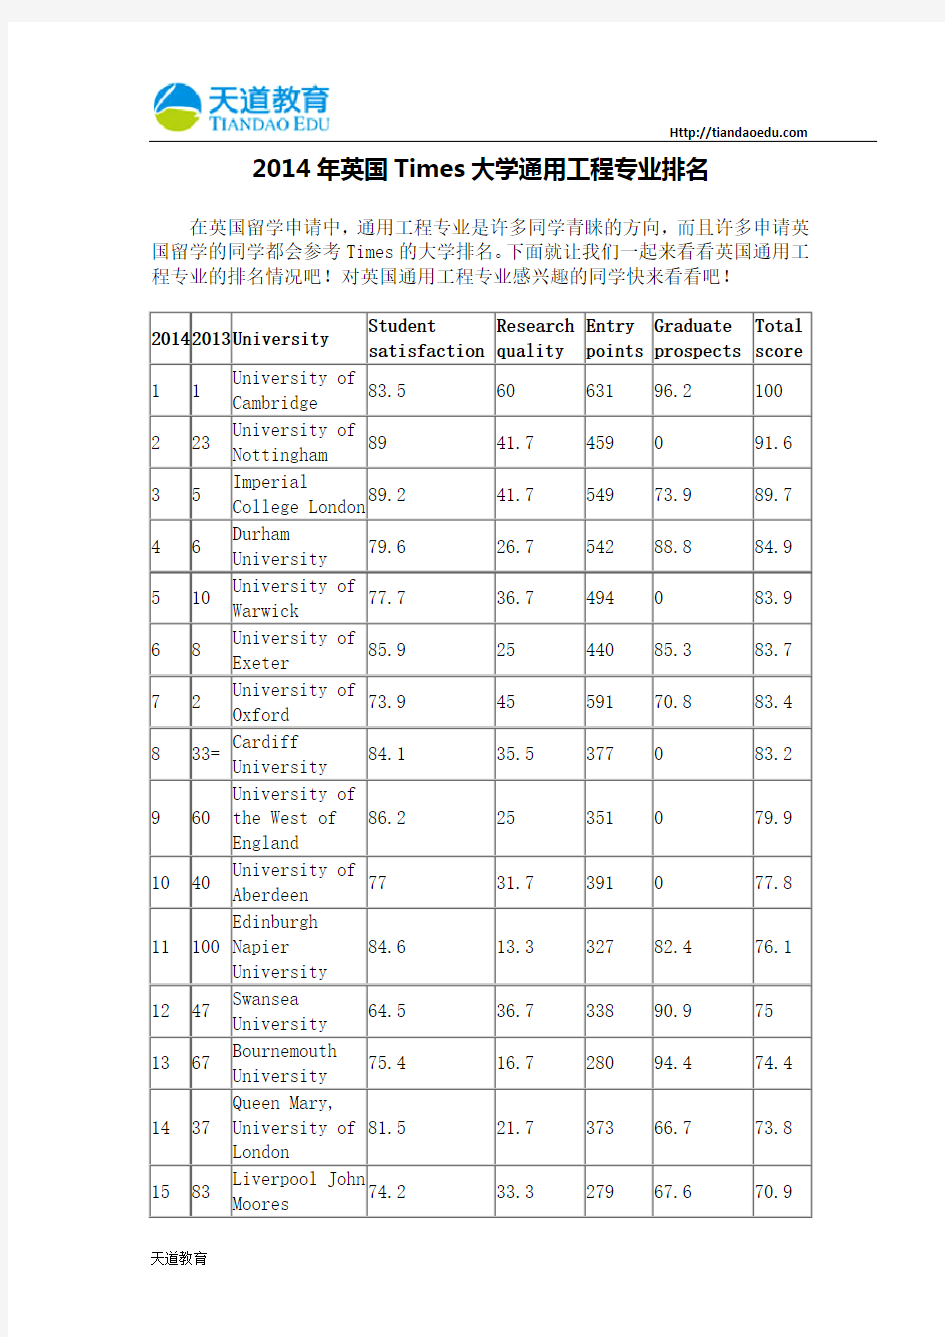 【天道独家】2014年英国Times大学通用工程专业排名